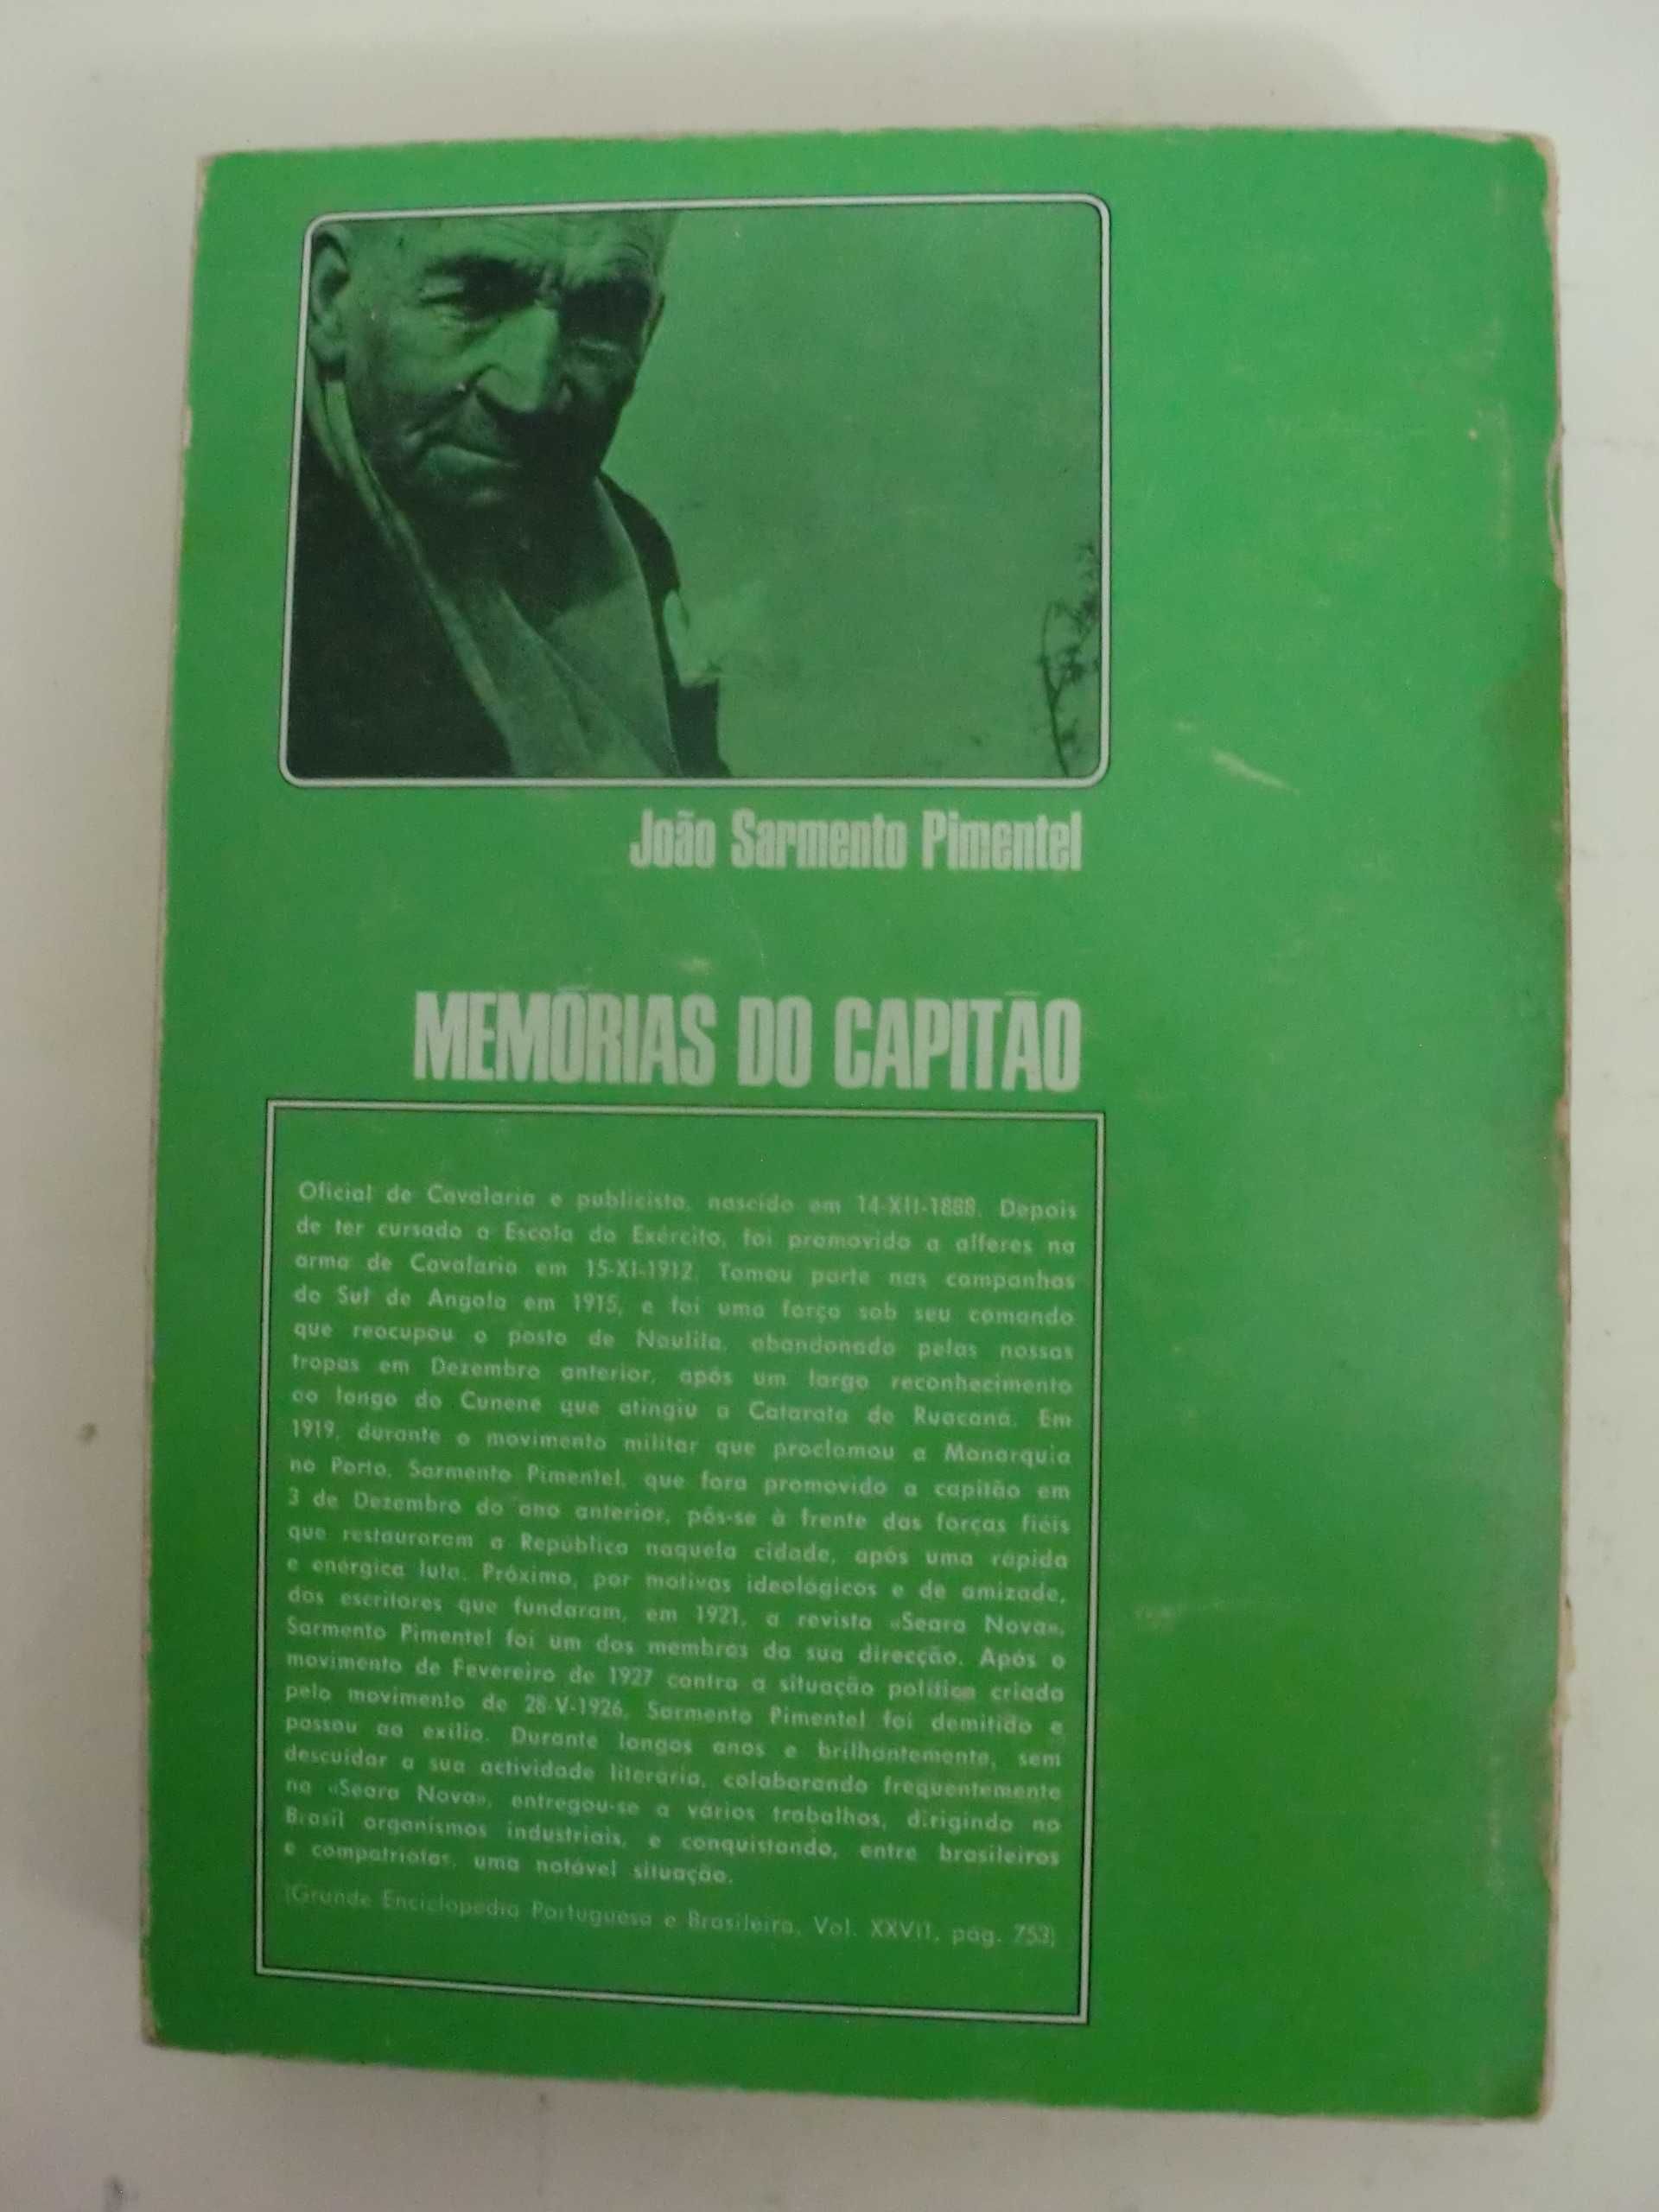 Memórias do capitão de João Sarmento Pimentel